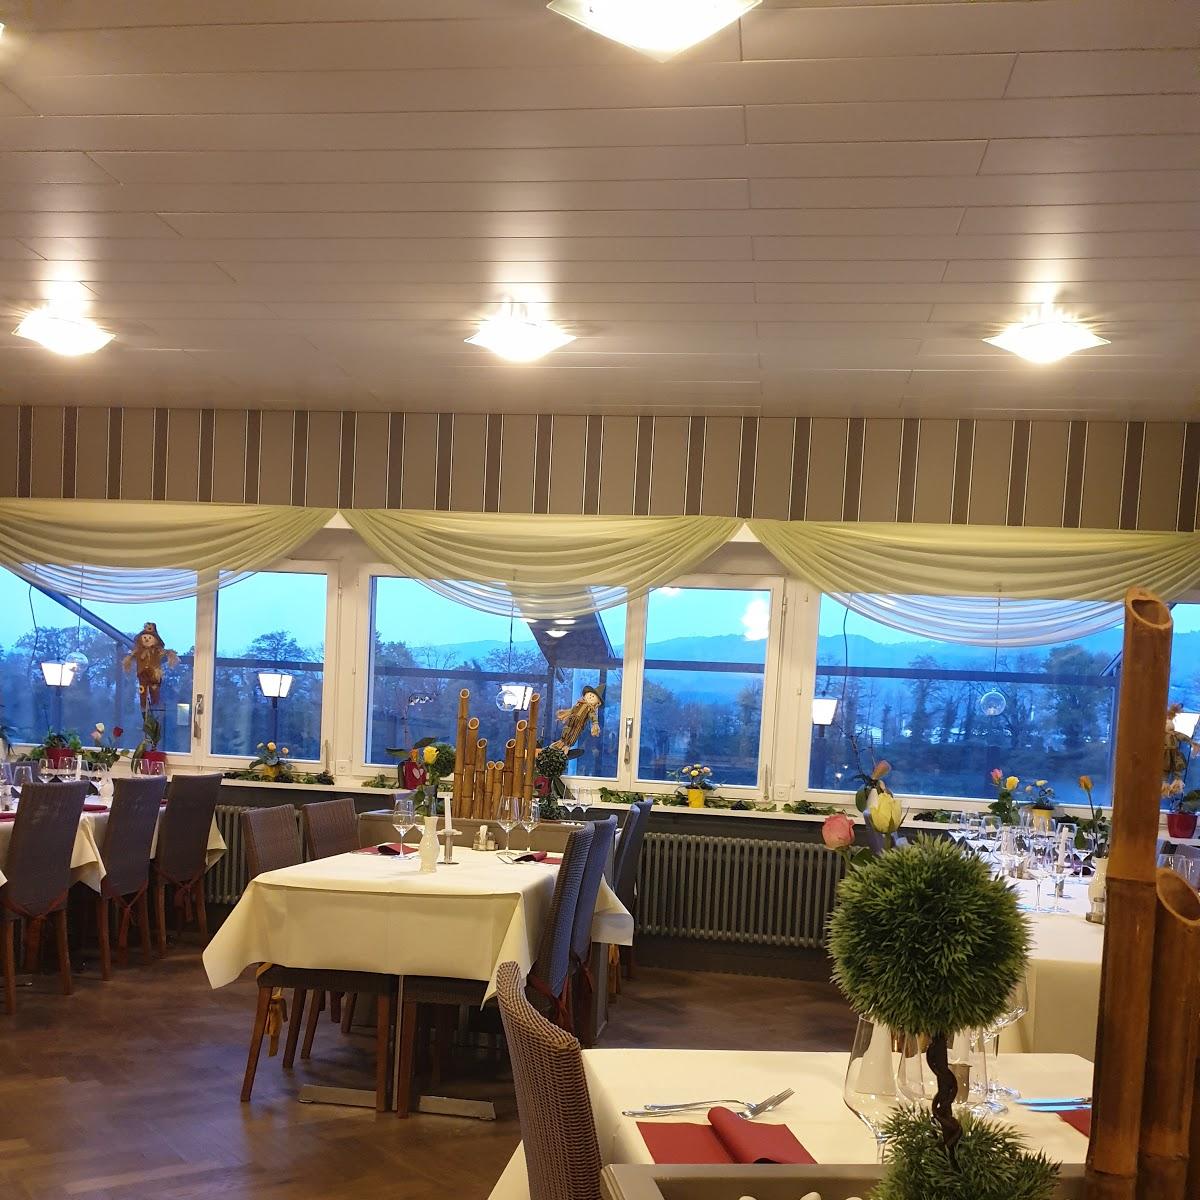 Restaurant "GASTHOF ZUM ANKER - Catering, Partyservice, Fondue Chinoise, Filet auf heissem Stein" in Mumpf